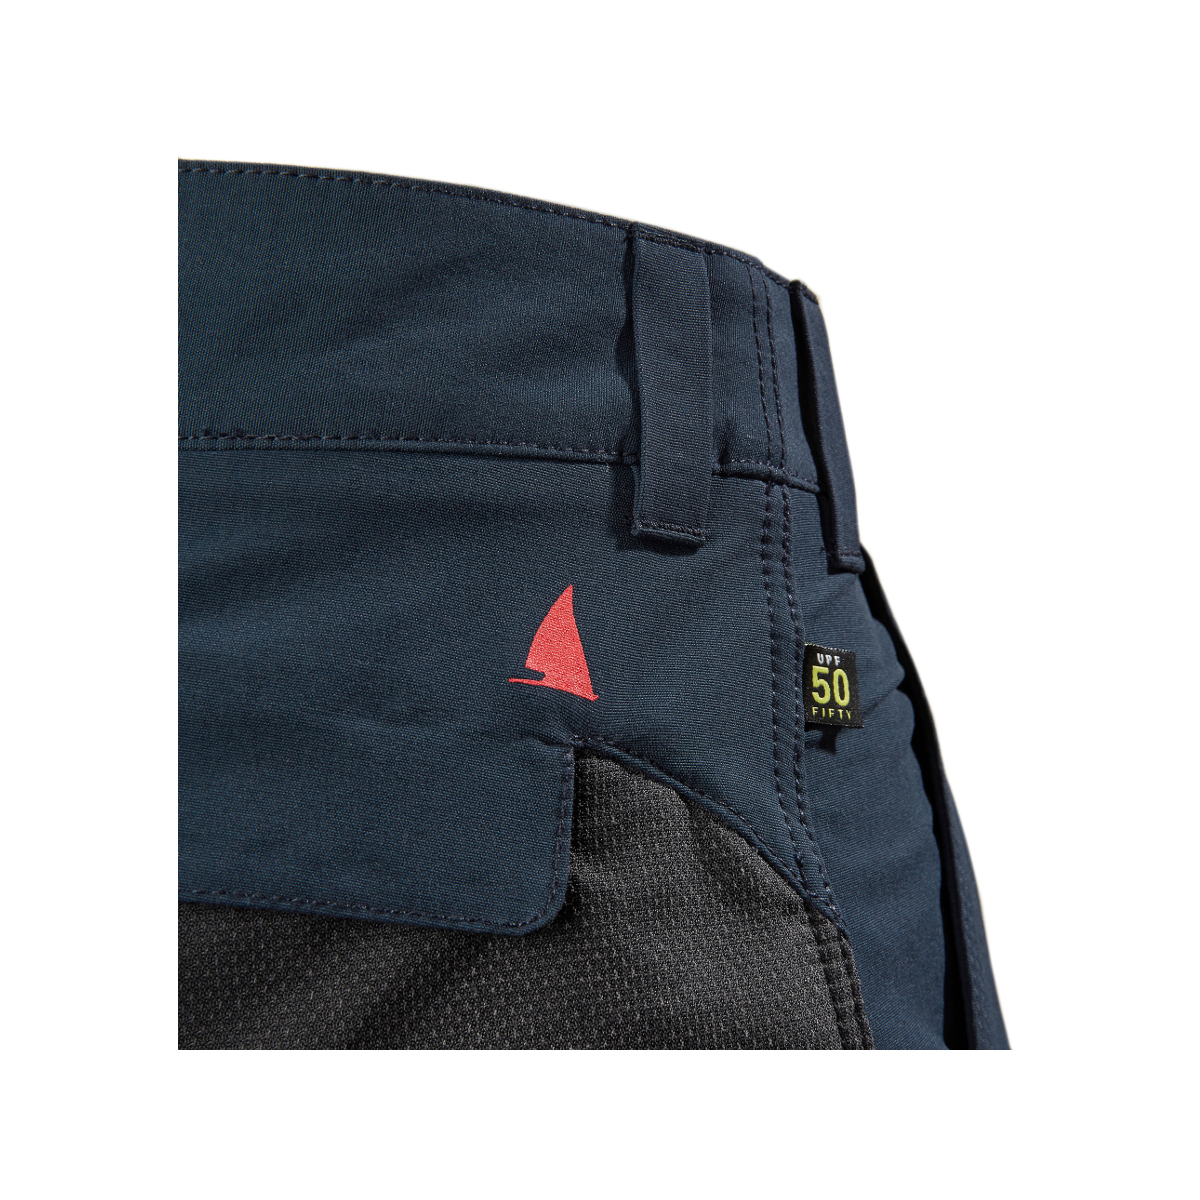 Musto Evolution Performance pantalon de voile 2.0 homme bleu marine, taille 36